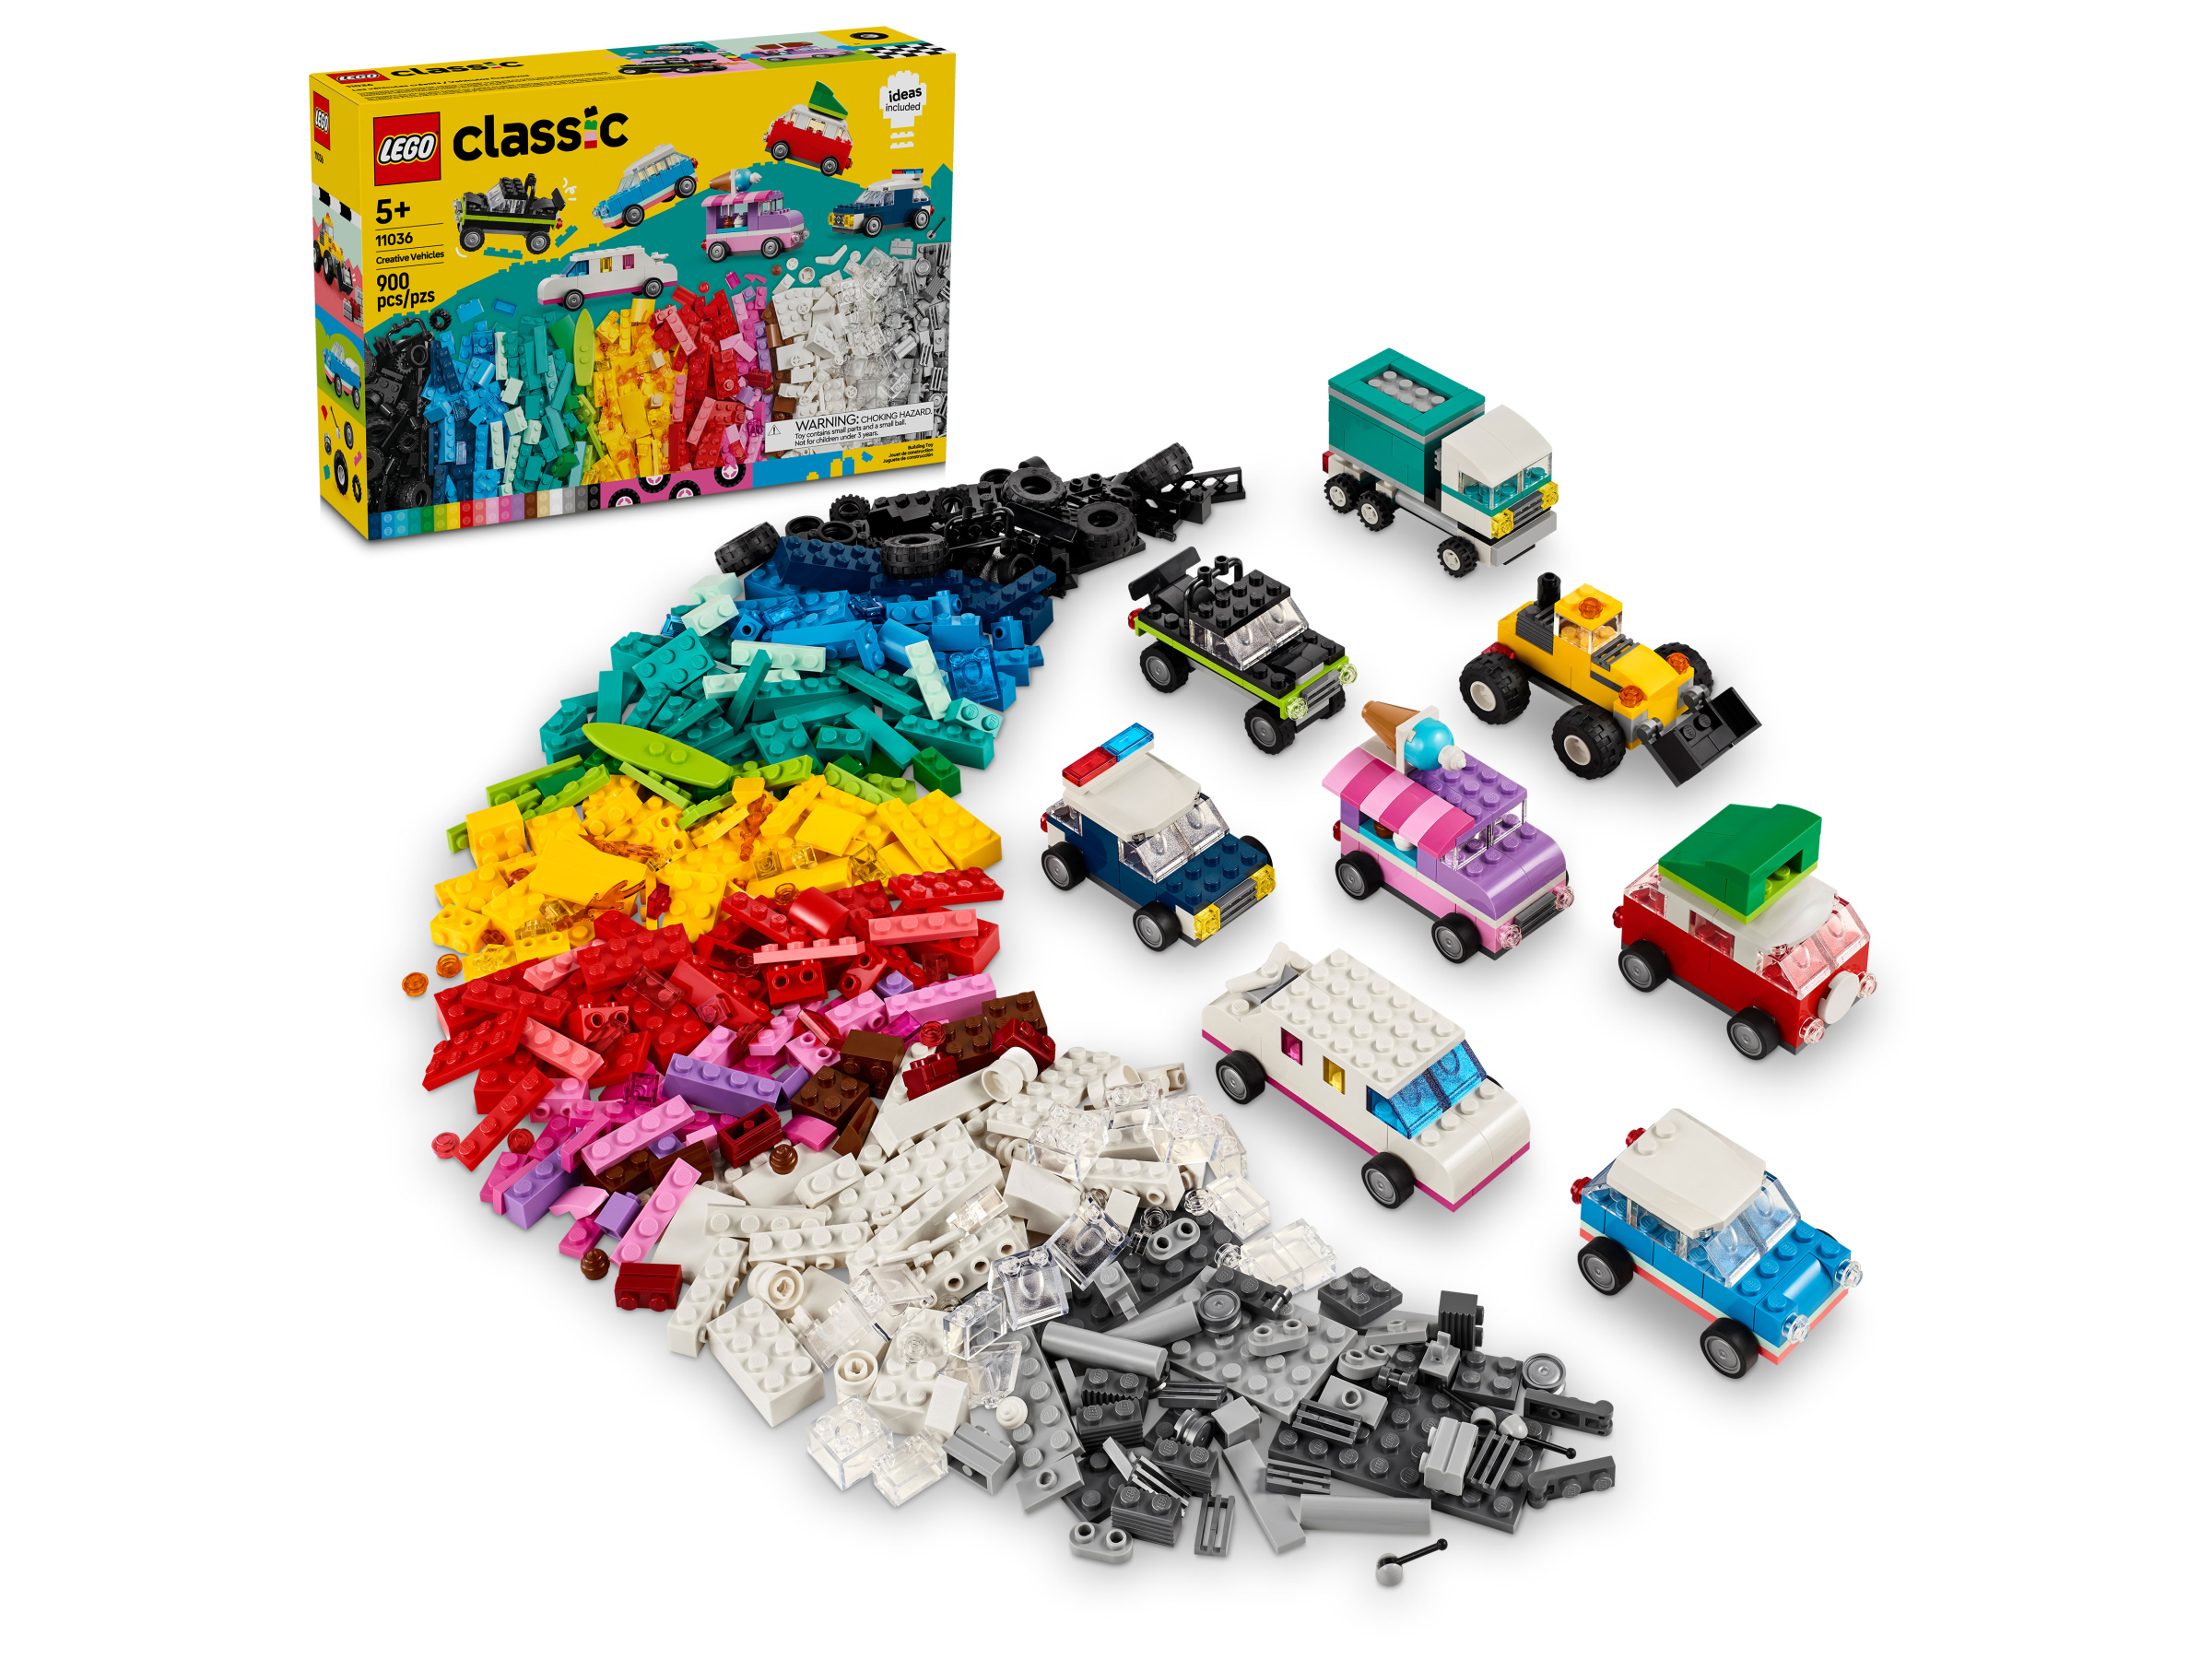 Acheter en ligne LEGO Classic La plaque de construction grise